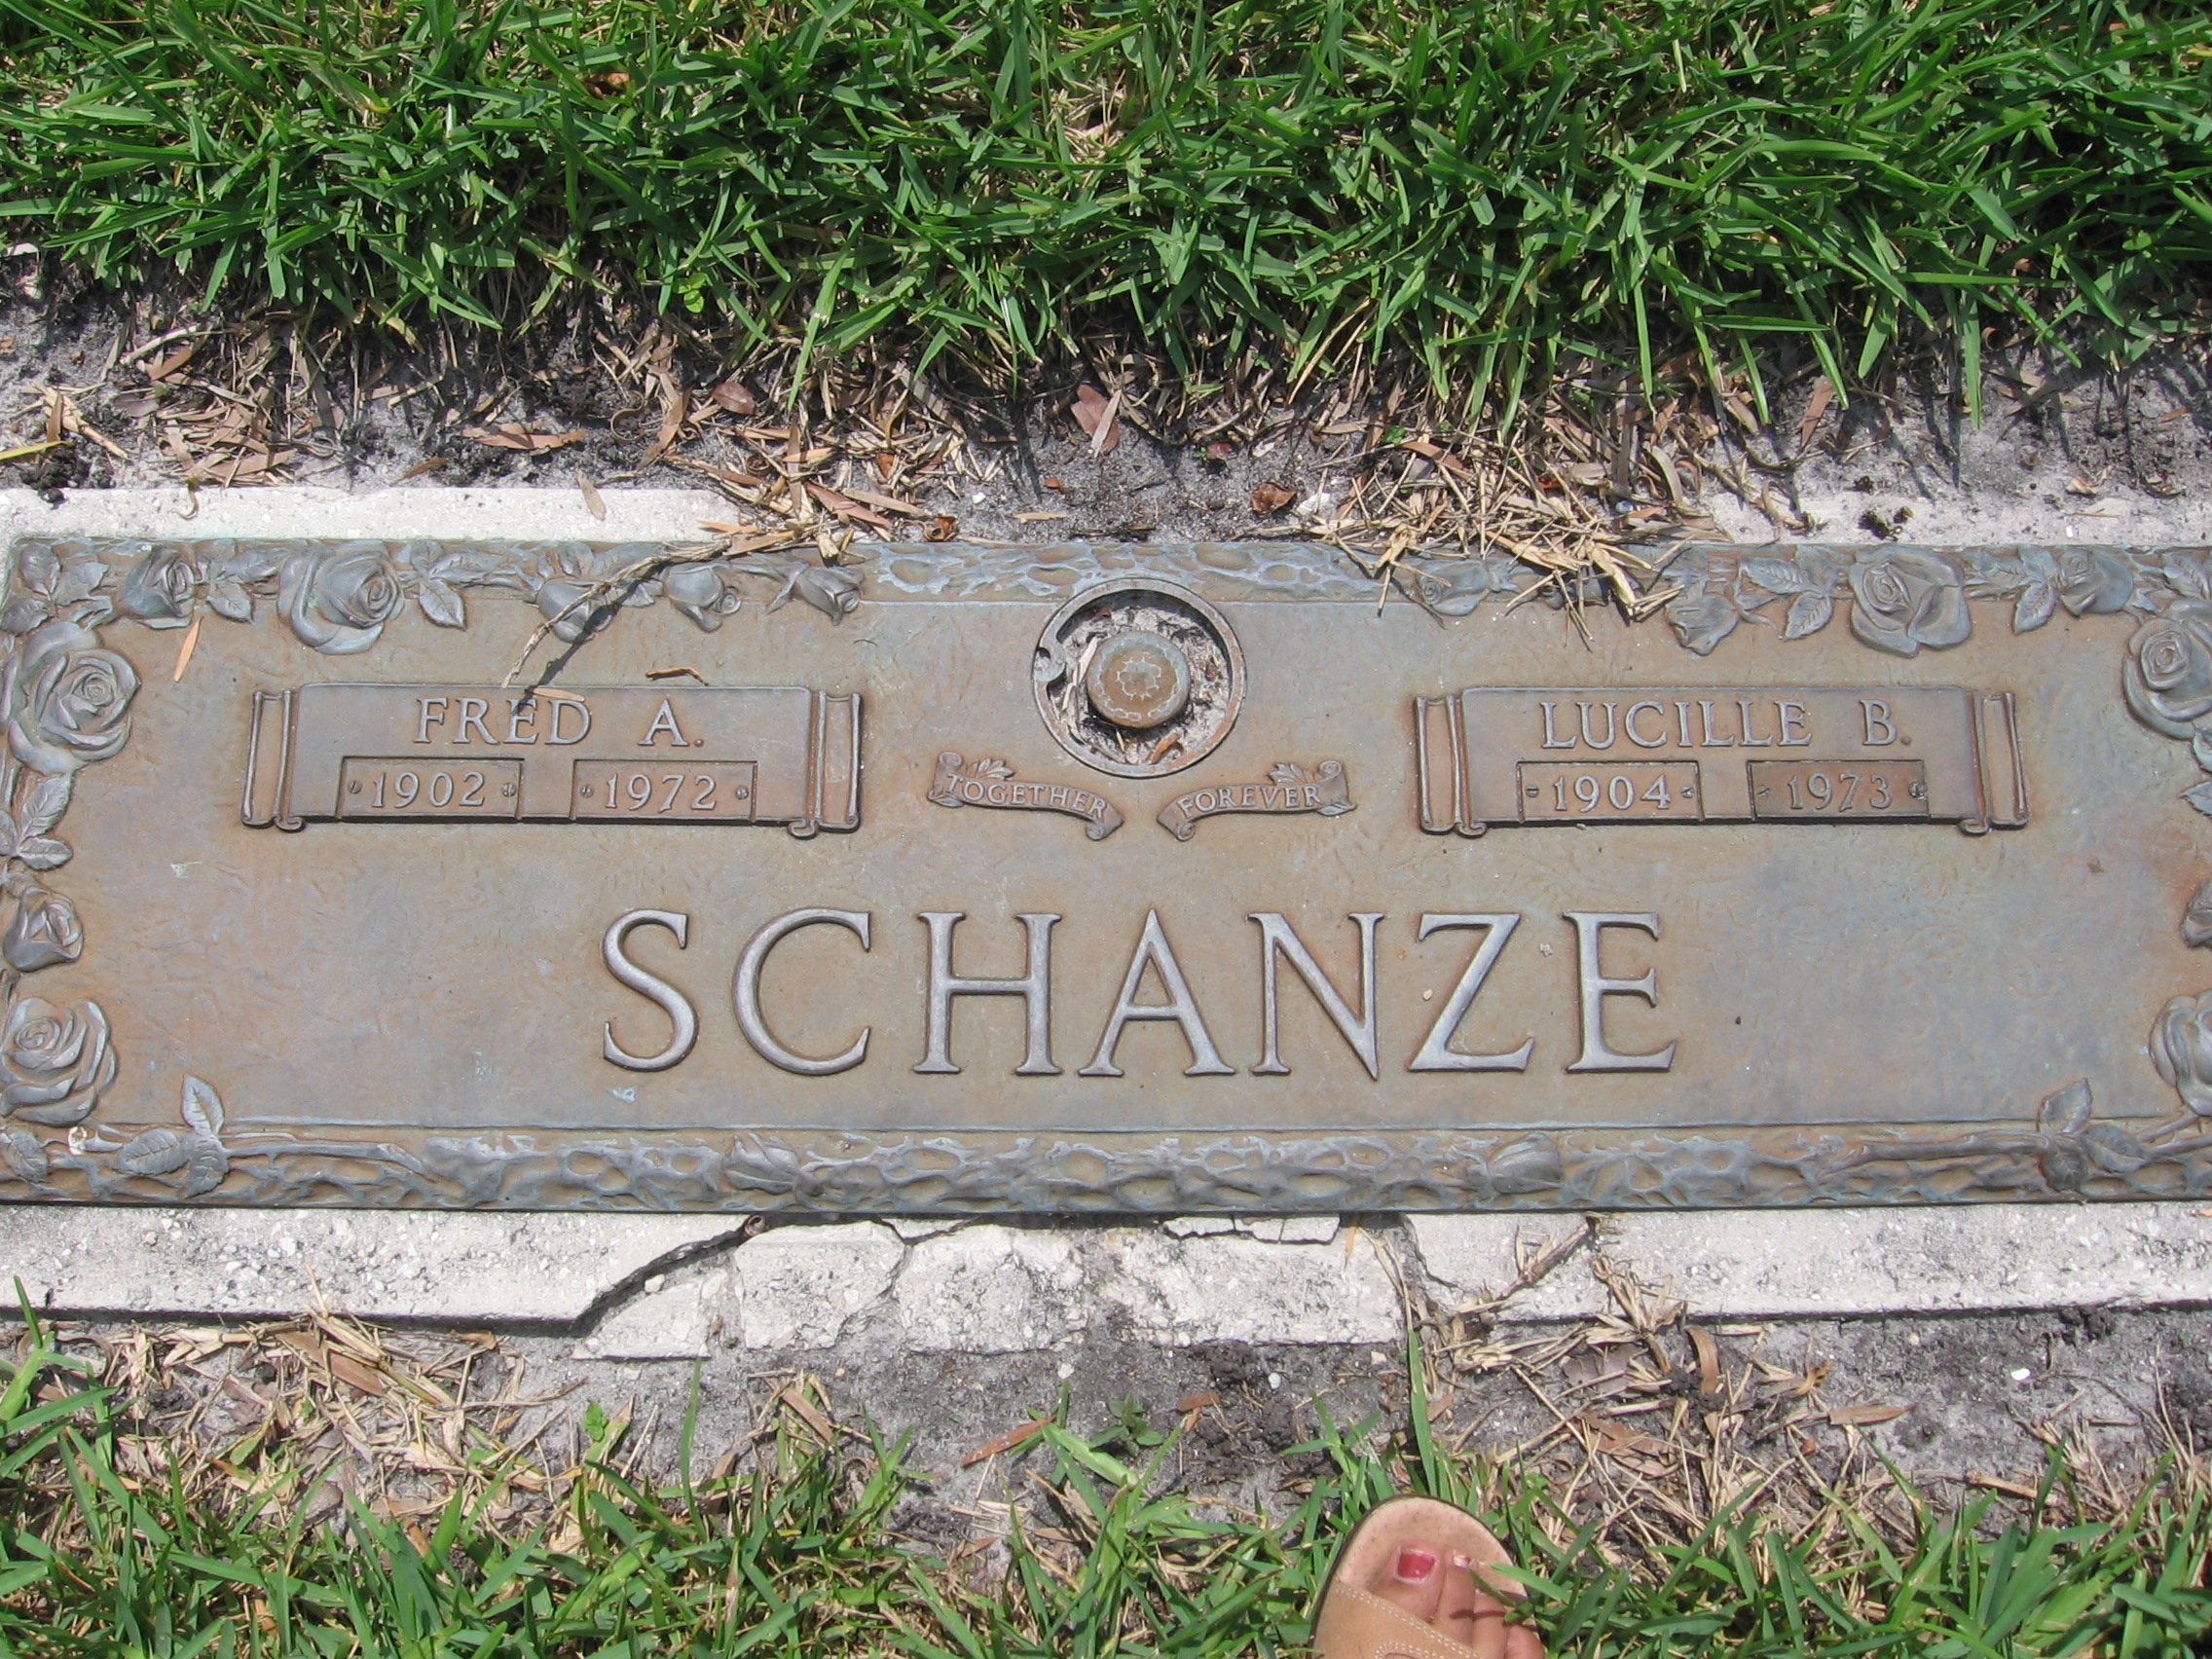 Fred A Schanze